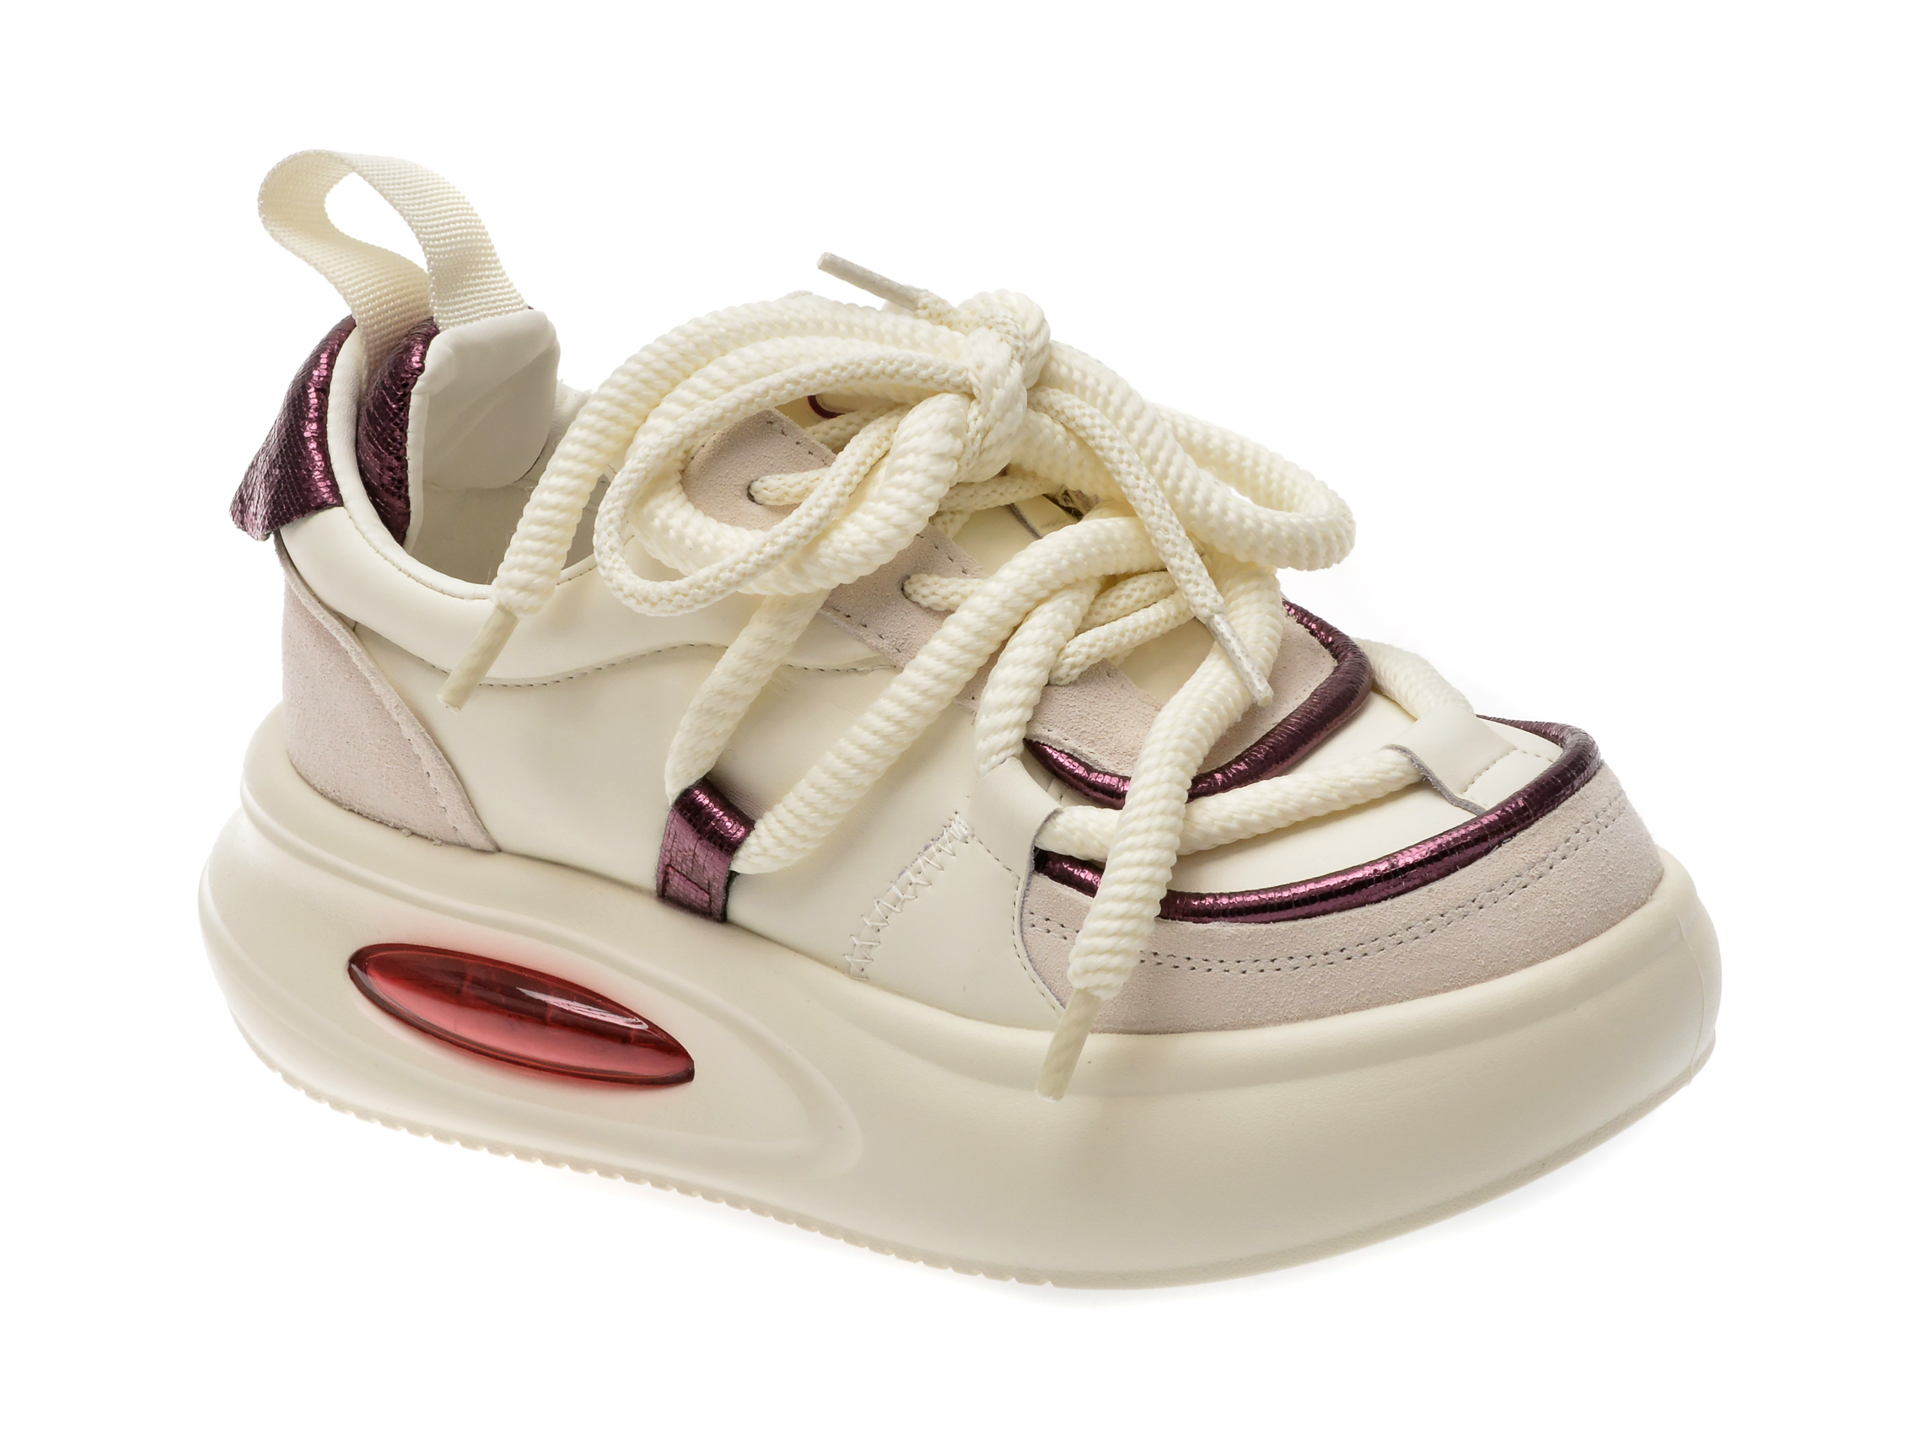 Pantofi casual FLAVIA PASSINI albi, 20245, din piele naturala